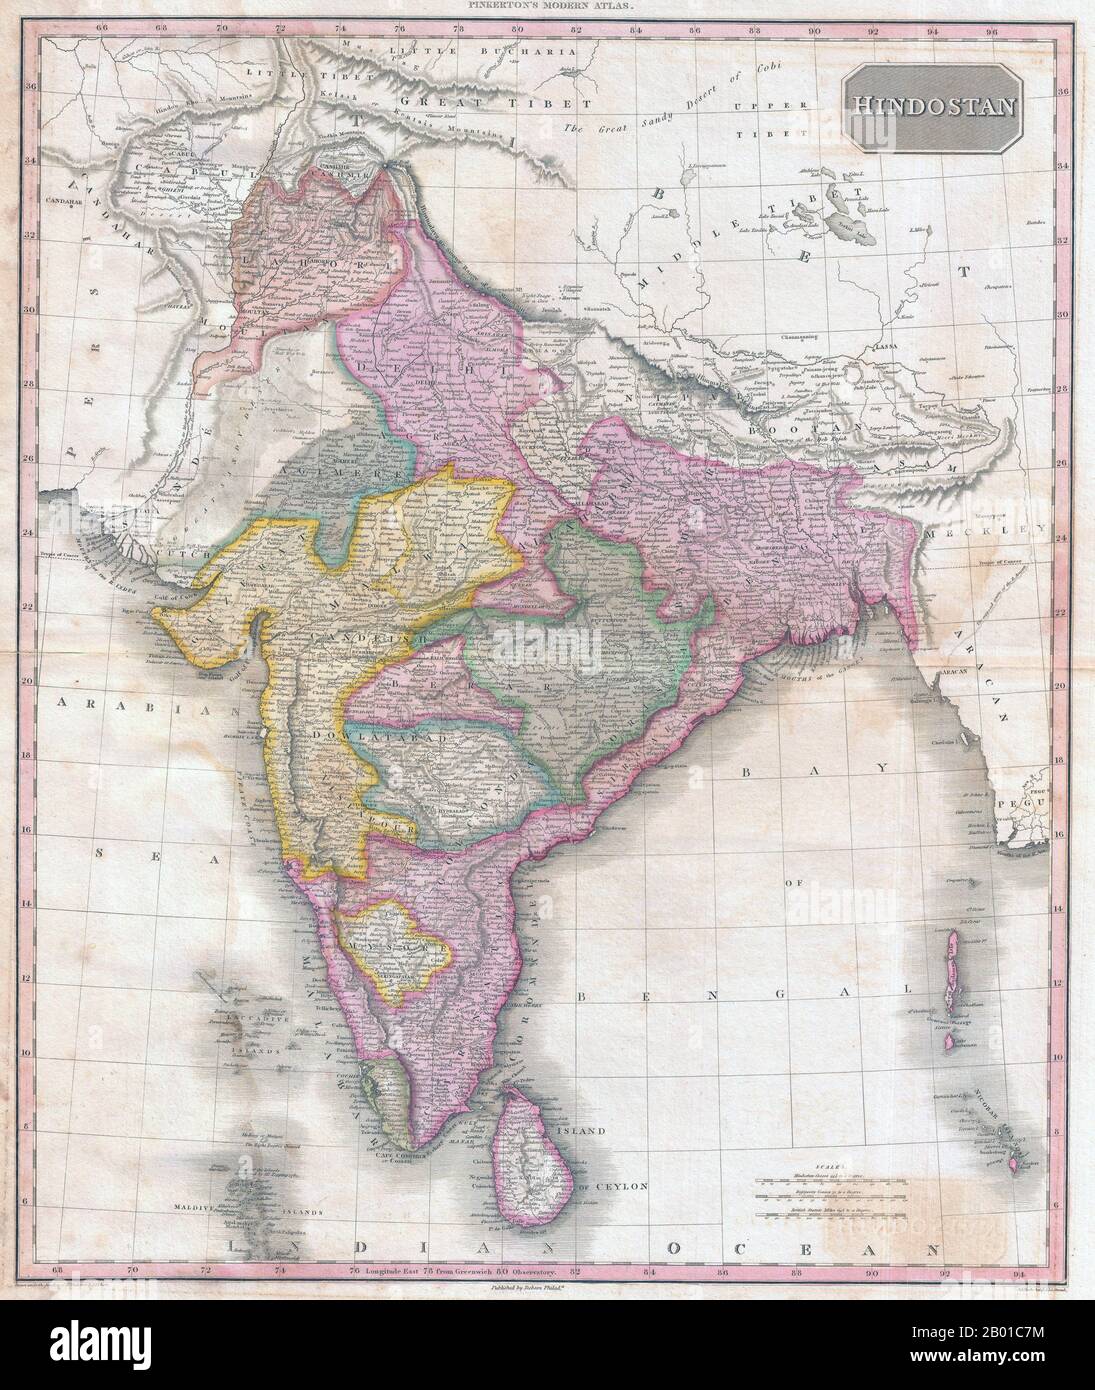 India/Asia meridionale: Mappa di Hindostan che mostra il Raj britannico di John Pinkerton (17 febbraio 1758 - 10 marzo 1826), c.. 1818. Mappa di Hindostan dall'Atlante moderno di Pinkerton, inizio del 19th° secolo. Copre il subcontinente dal Tibet a Ceylon (Sri Lanka) e dalla foce dell'Indo al Regno di Pegu (Birmania/Myanmar). La mappa inoltre codifica a colori varie divisioni politiche e stati principesca. Foto Stock